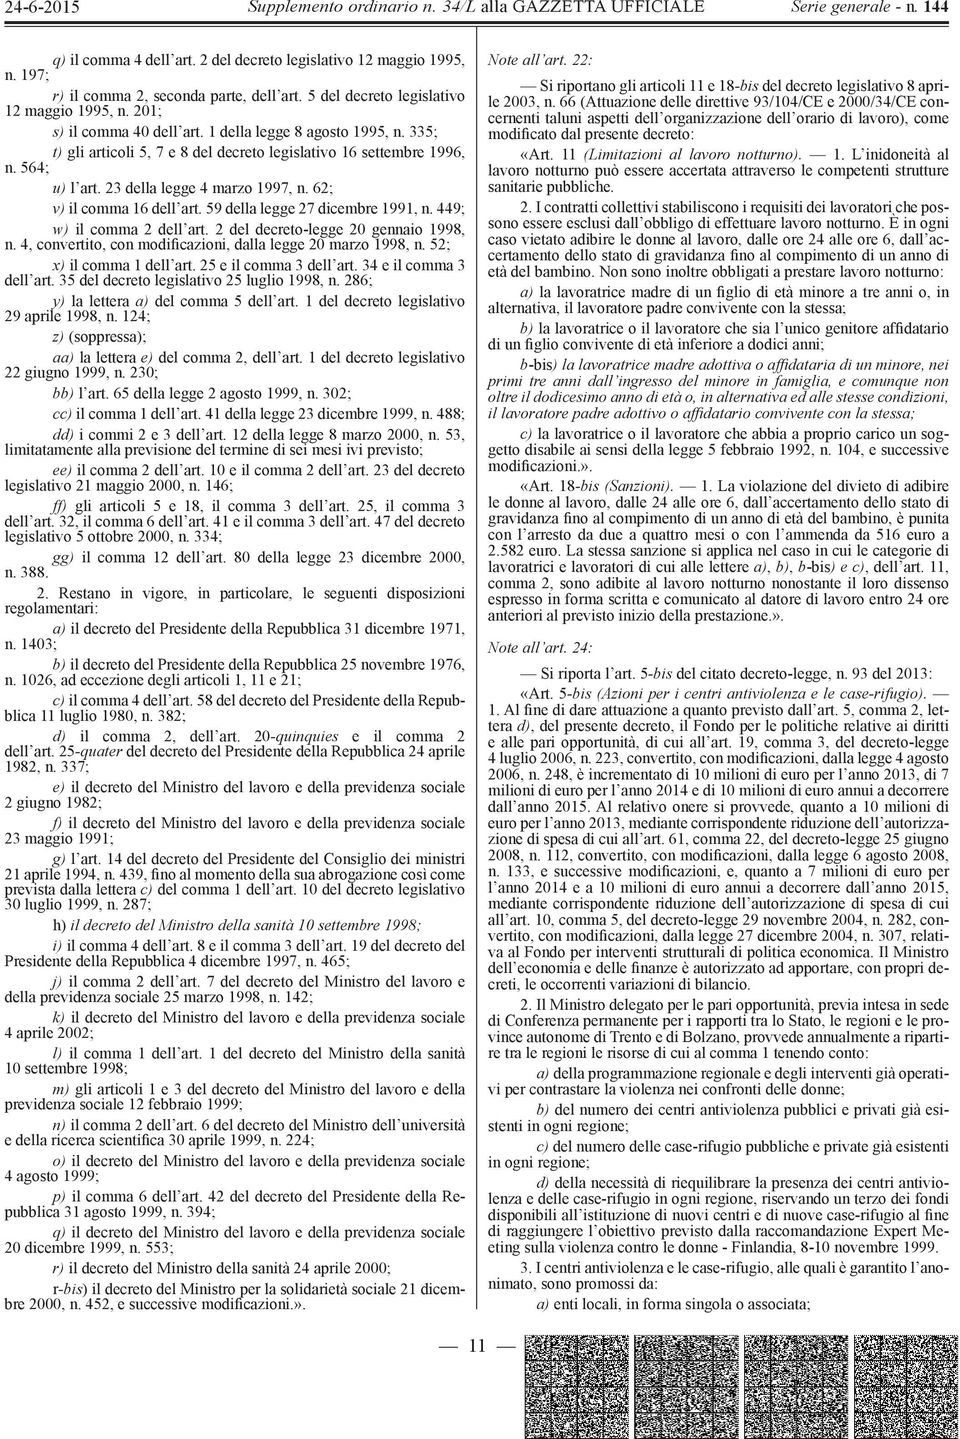 59 della legge 27 dicembre 1991, n. 449; w) il comma 2 dell art. 2 del decreto-legge 20 gennaio 1998, n. 4, convertito, con modificazioni, dalla legge 20 marzo 1998, n. 52; x) il comma 1 dell art.